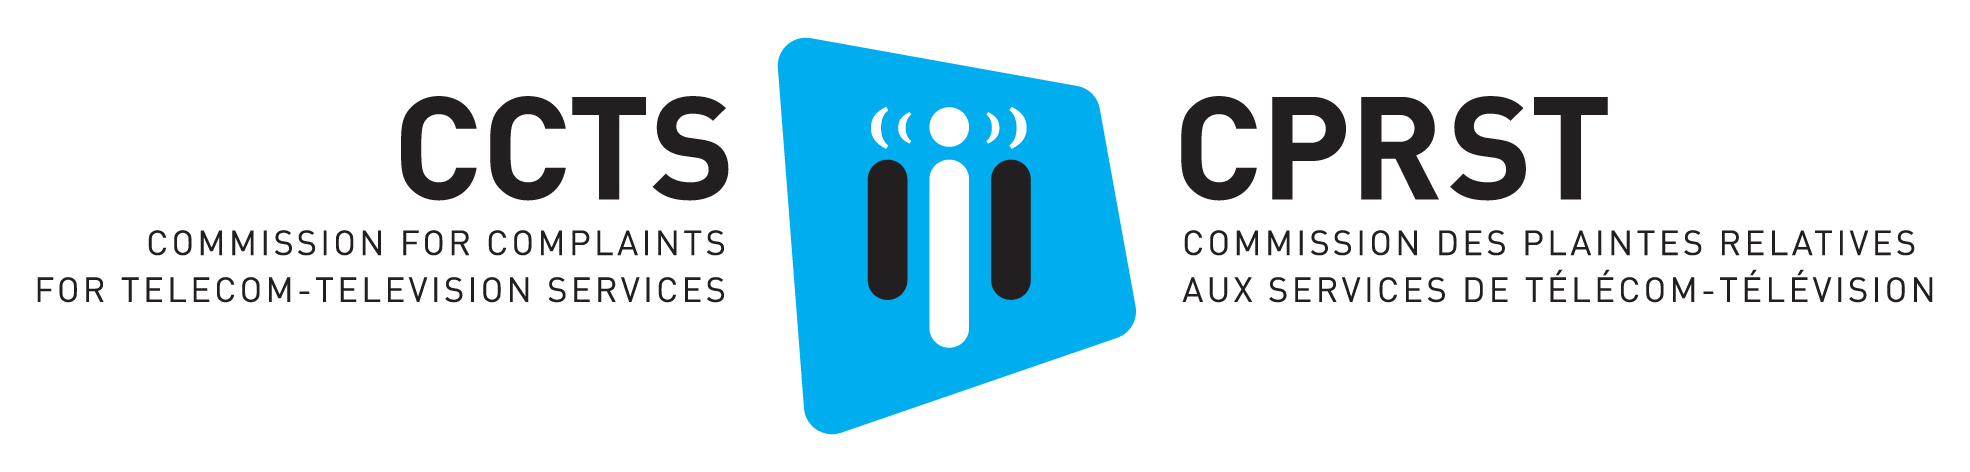 Logo de l’organisation Commission for Complaints for Telecom-television Services 